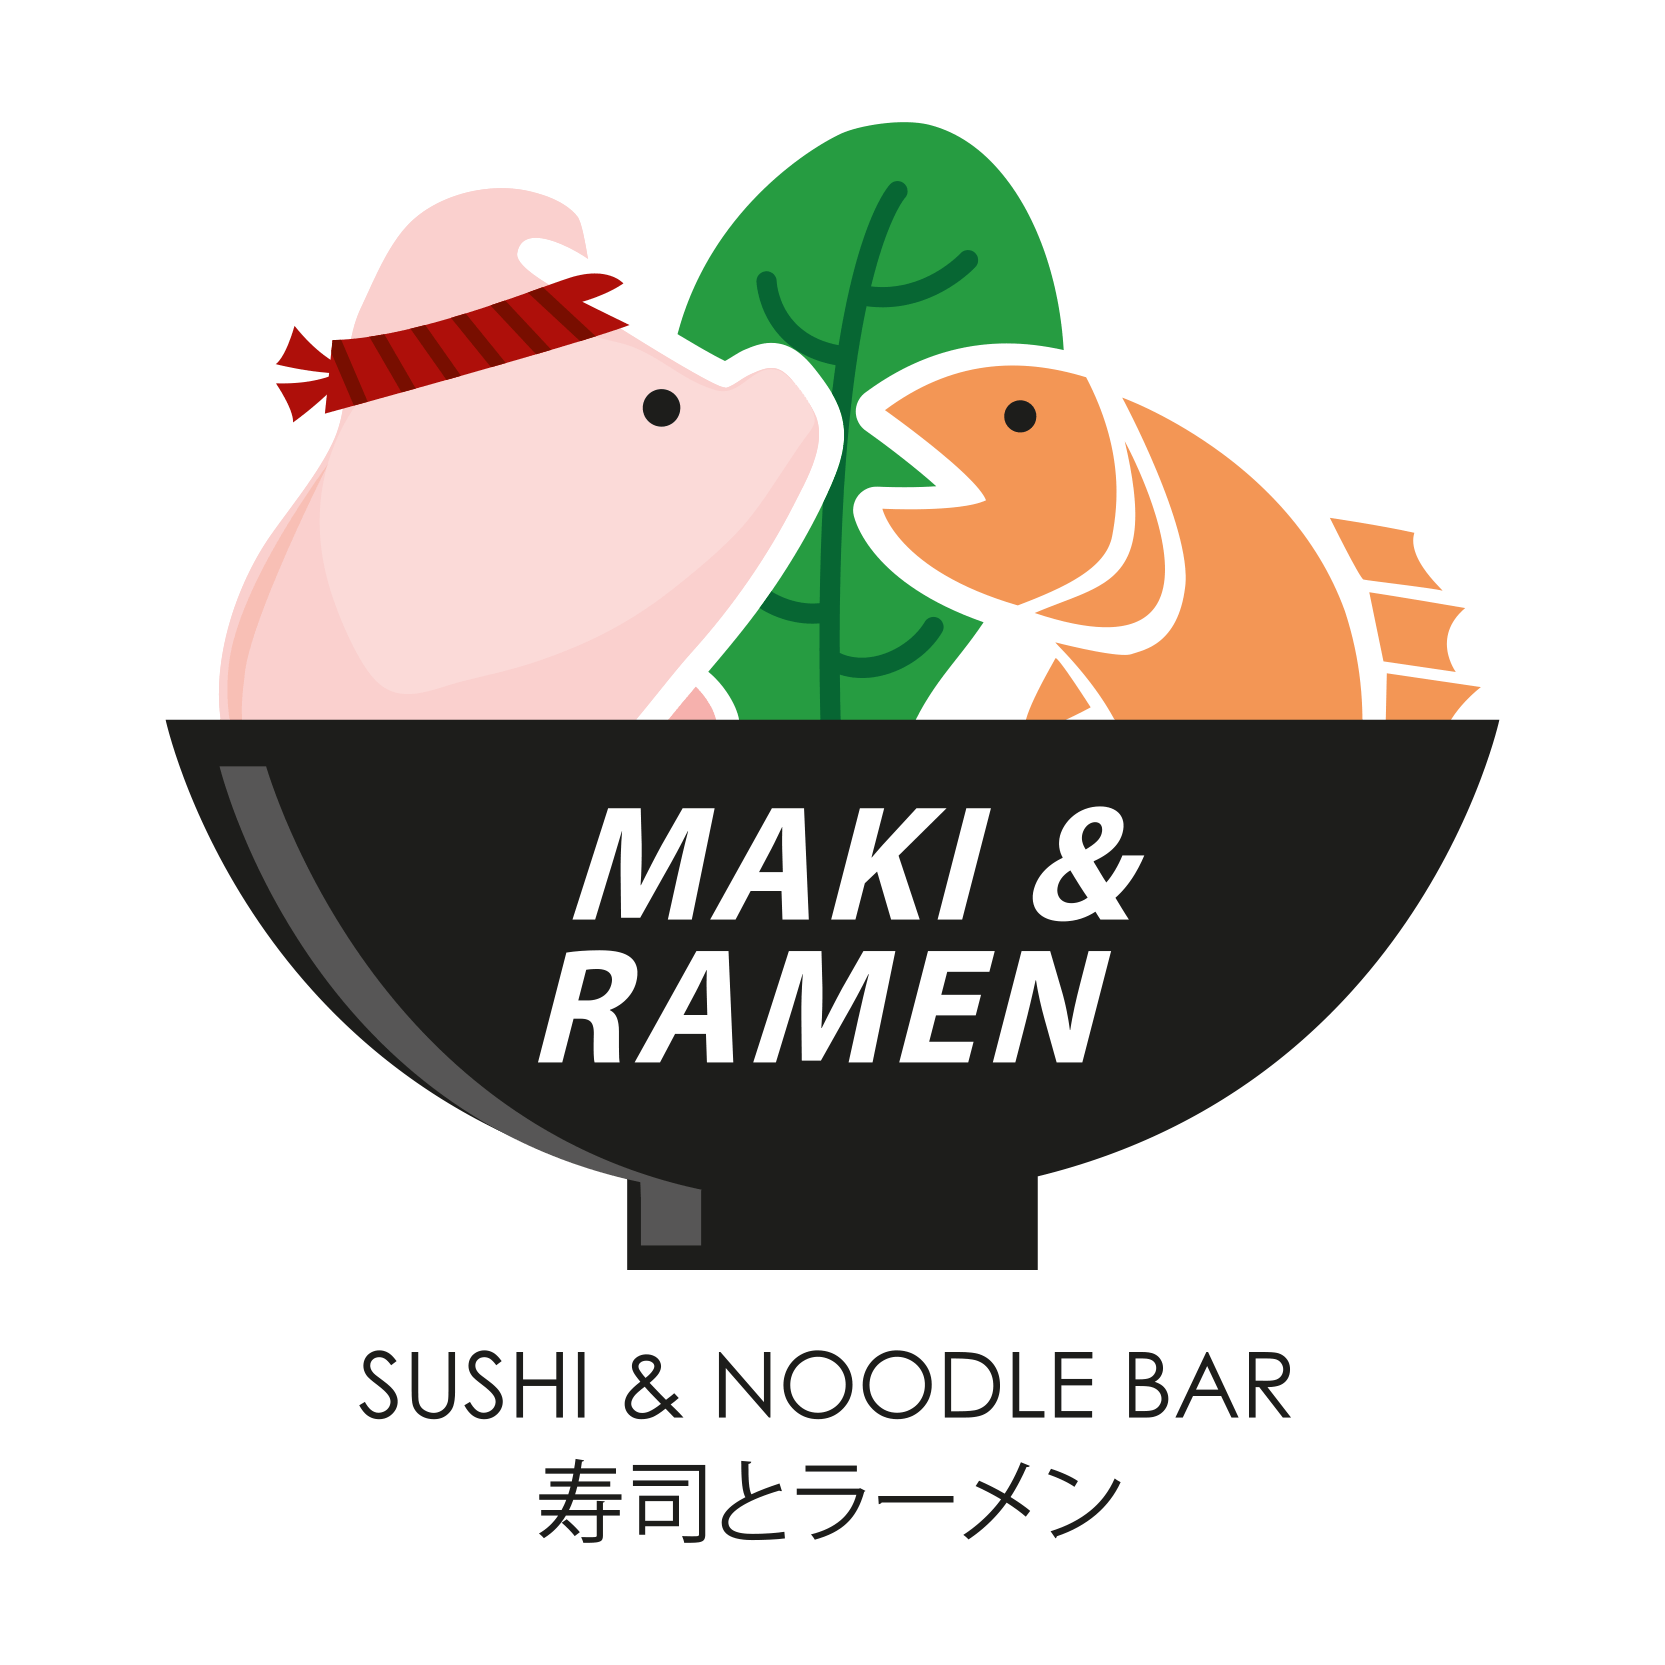 Maki & Ramen